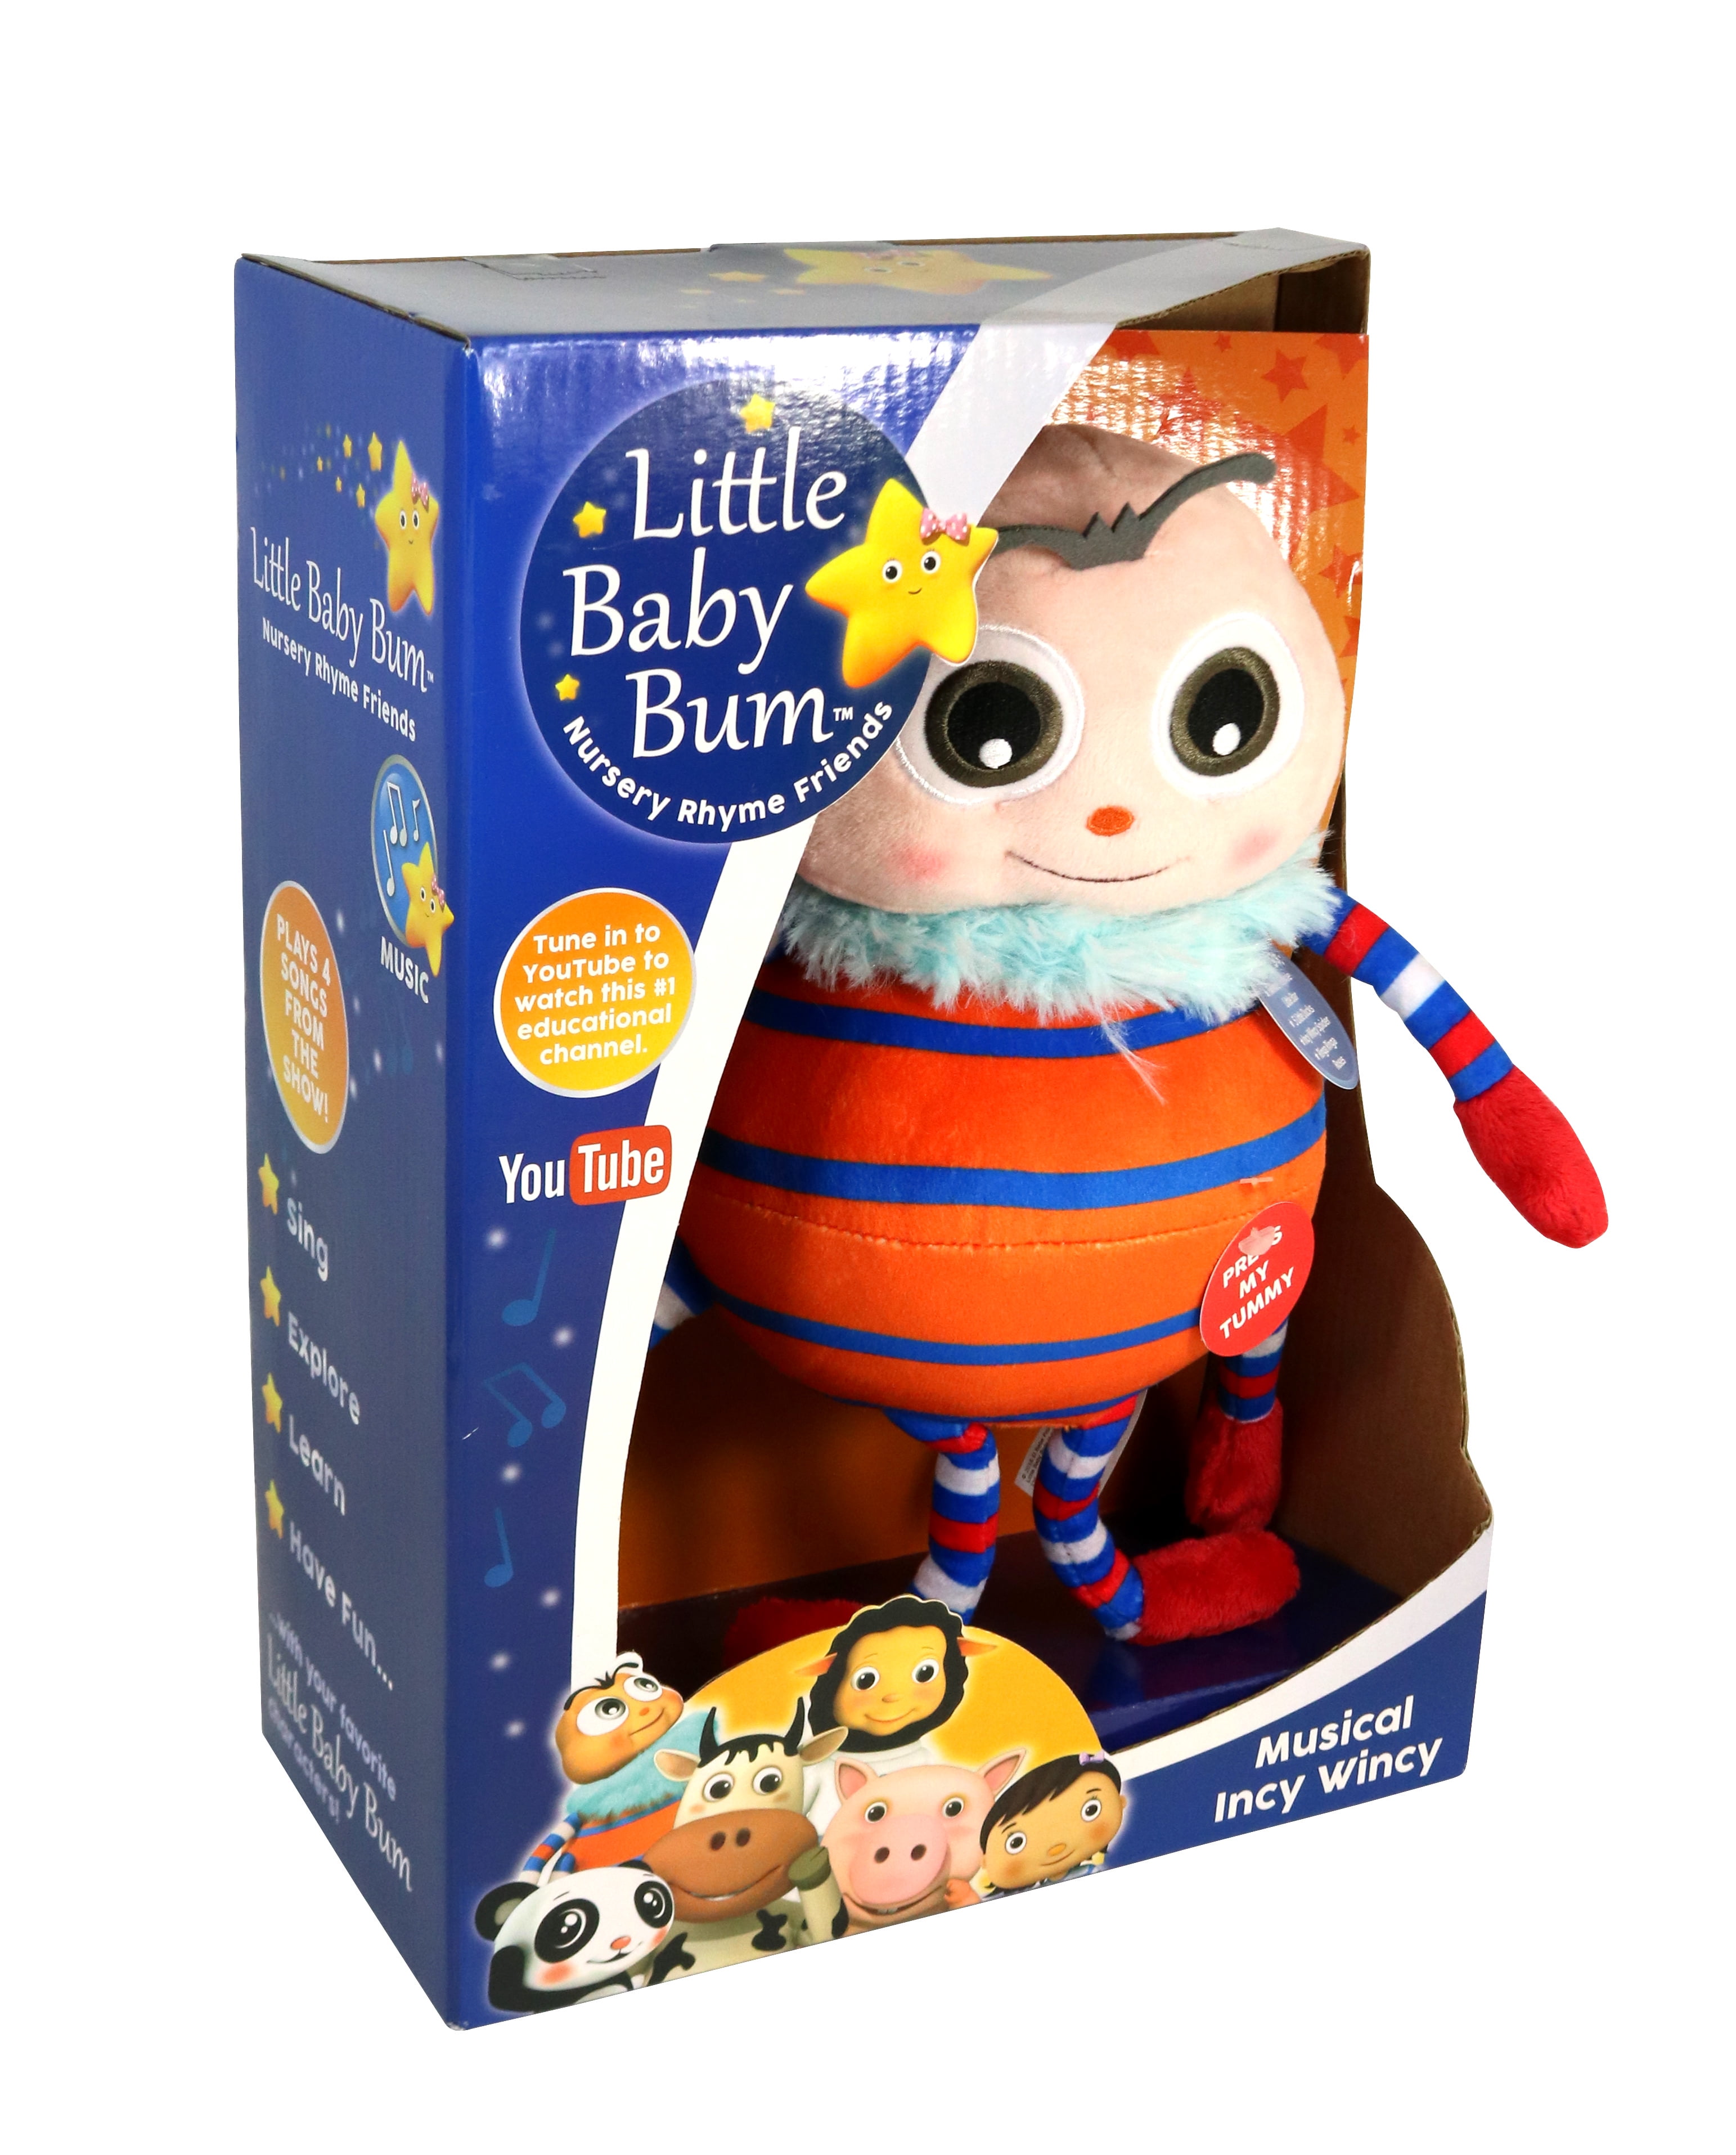 little baby bum incy wincy toy